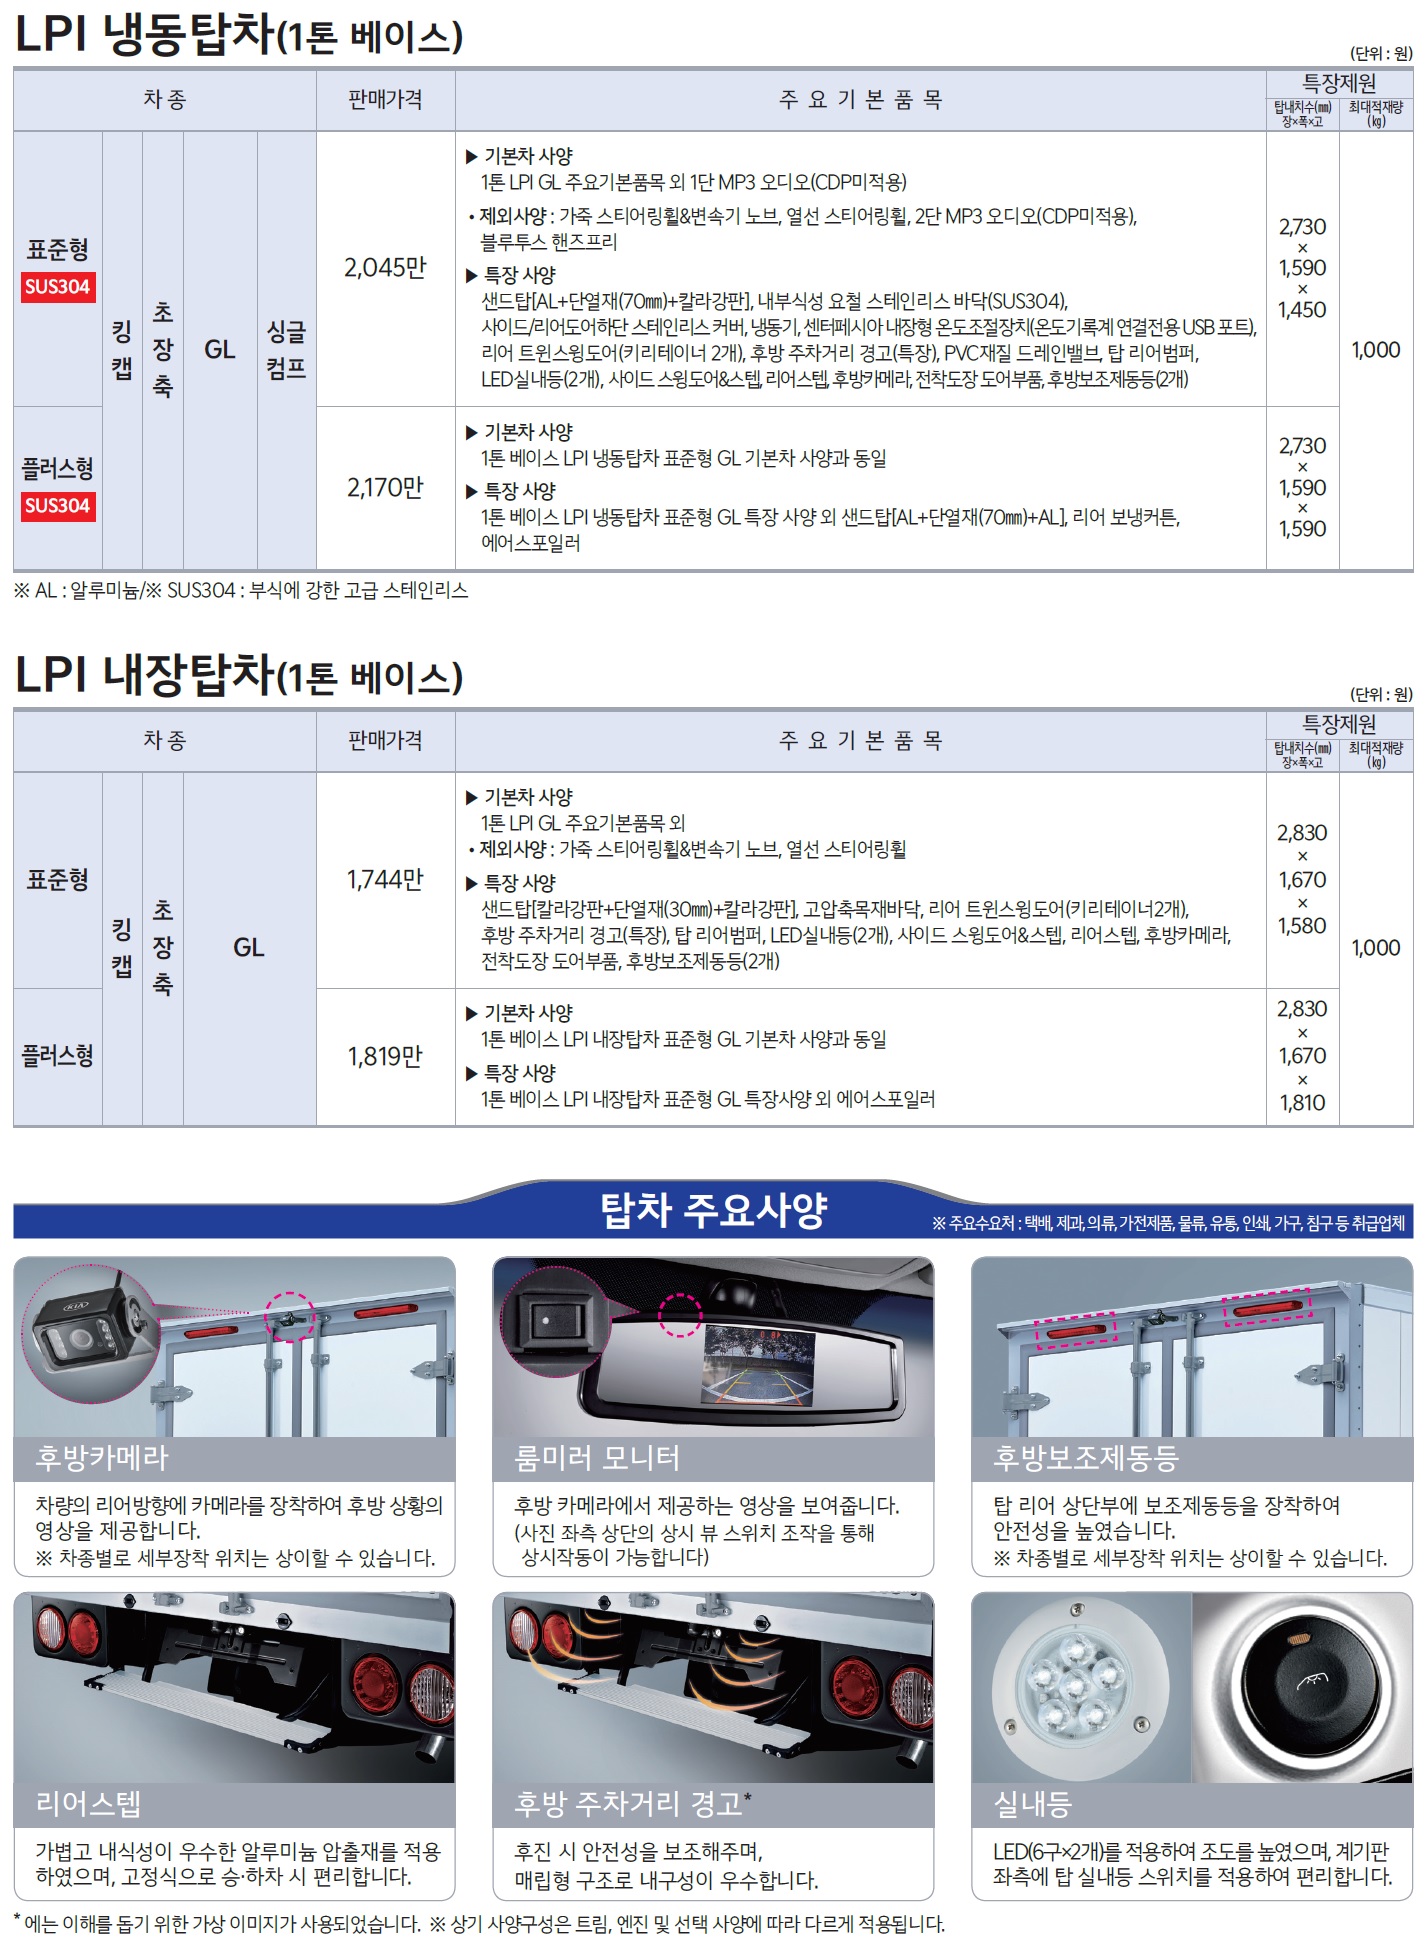 봉고3 특장차 가격표 - 2021년 02월 -6.jpg